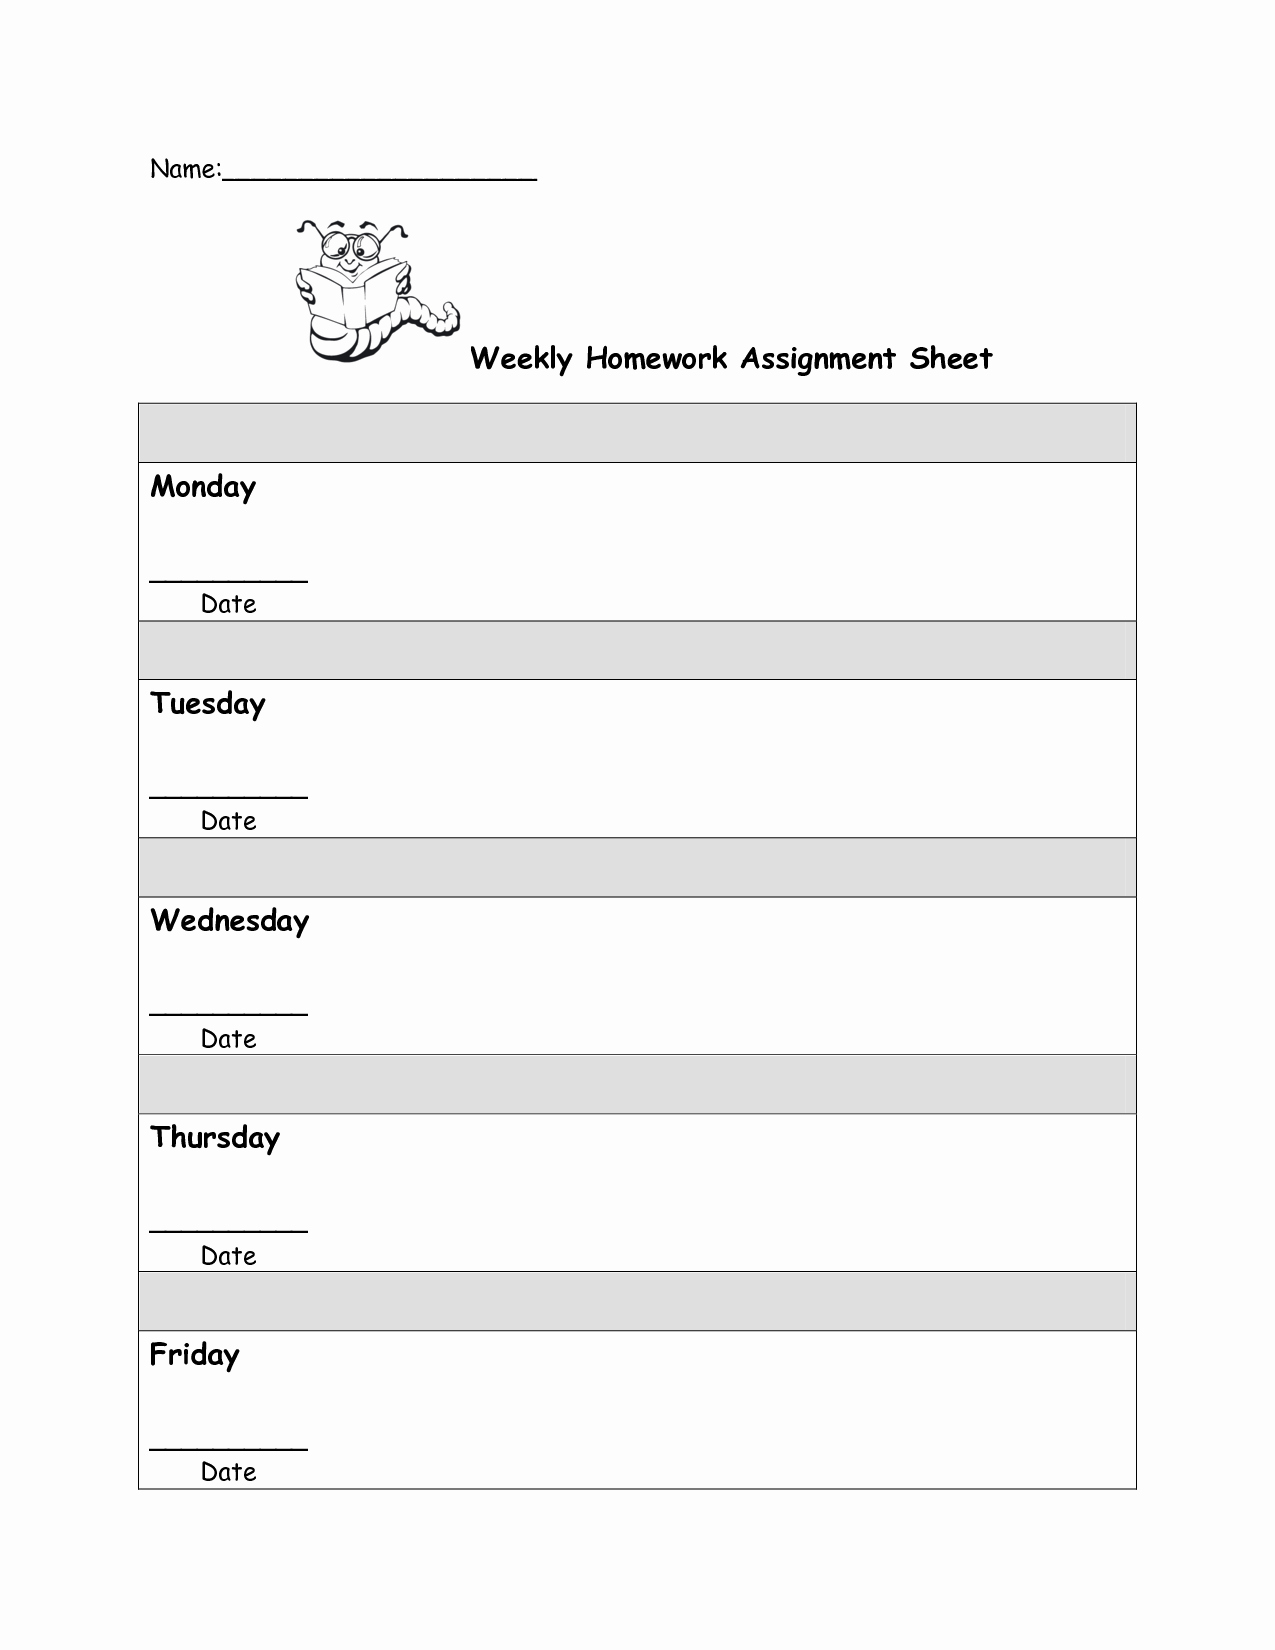 Weekly Homework assignment Sheet Template Awesome 8 Best Of Student Homework Sheet Template Printable